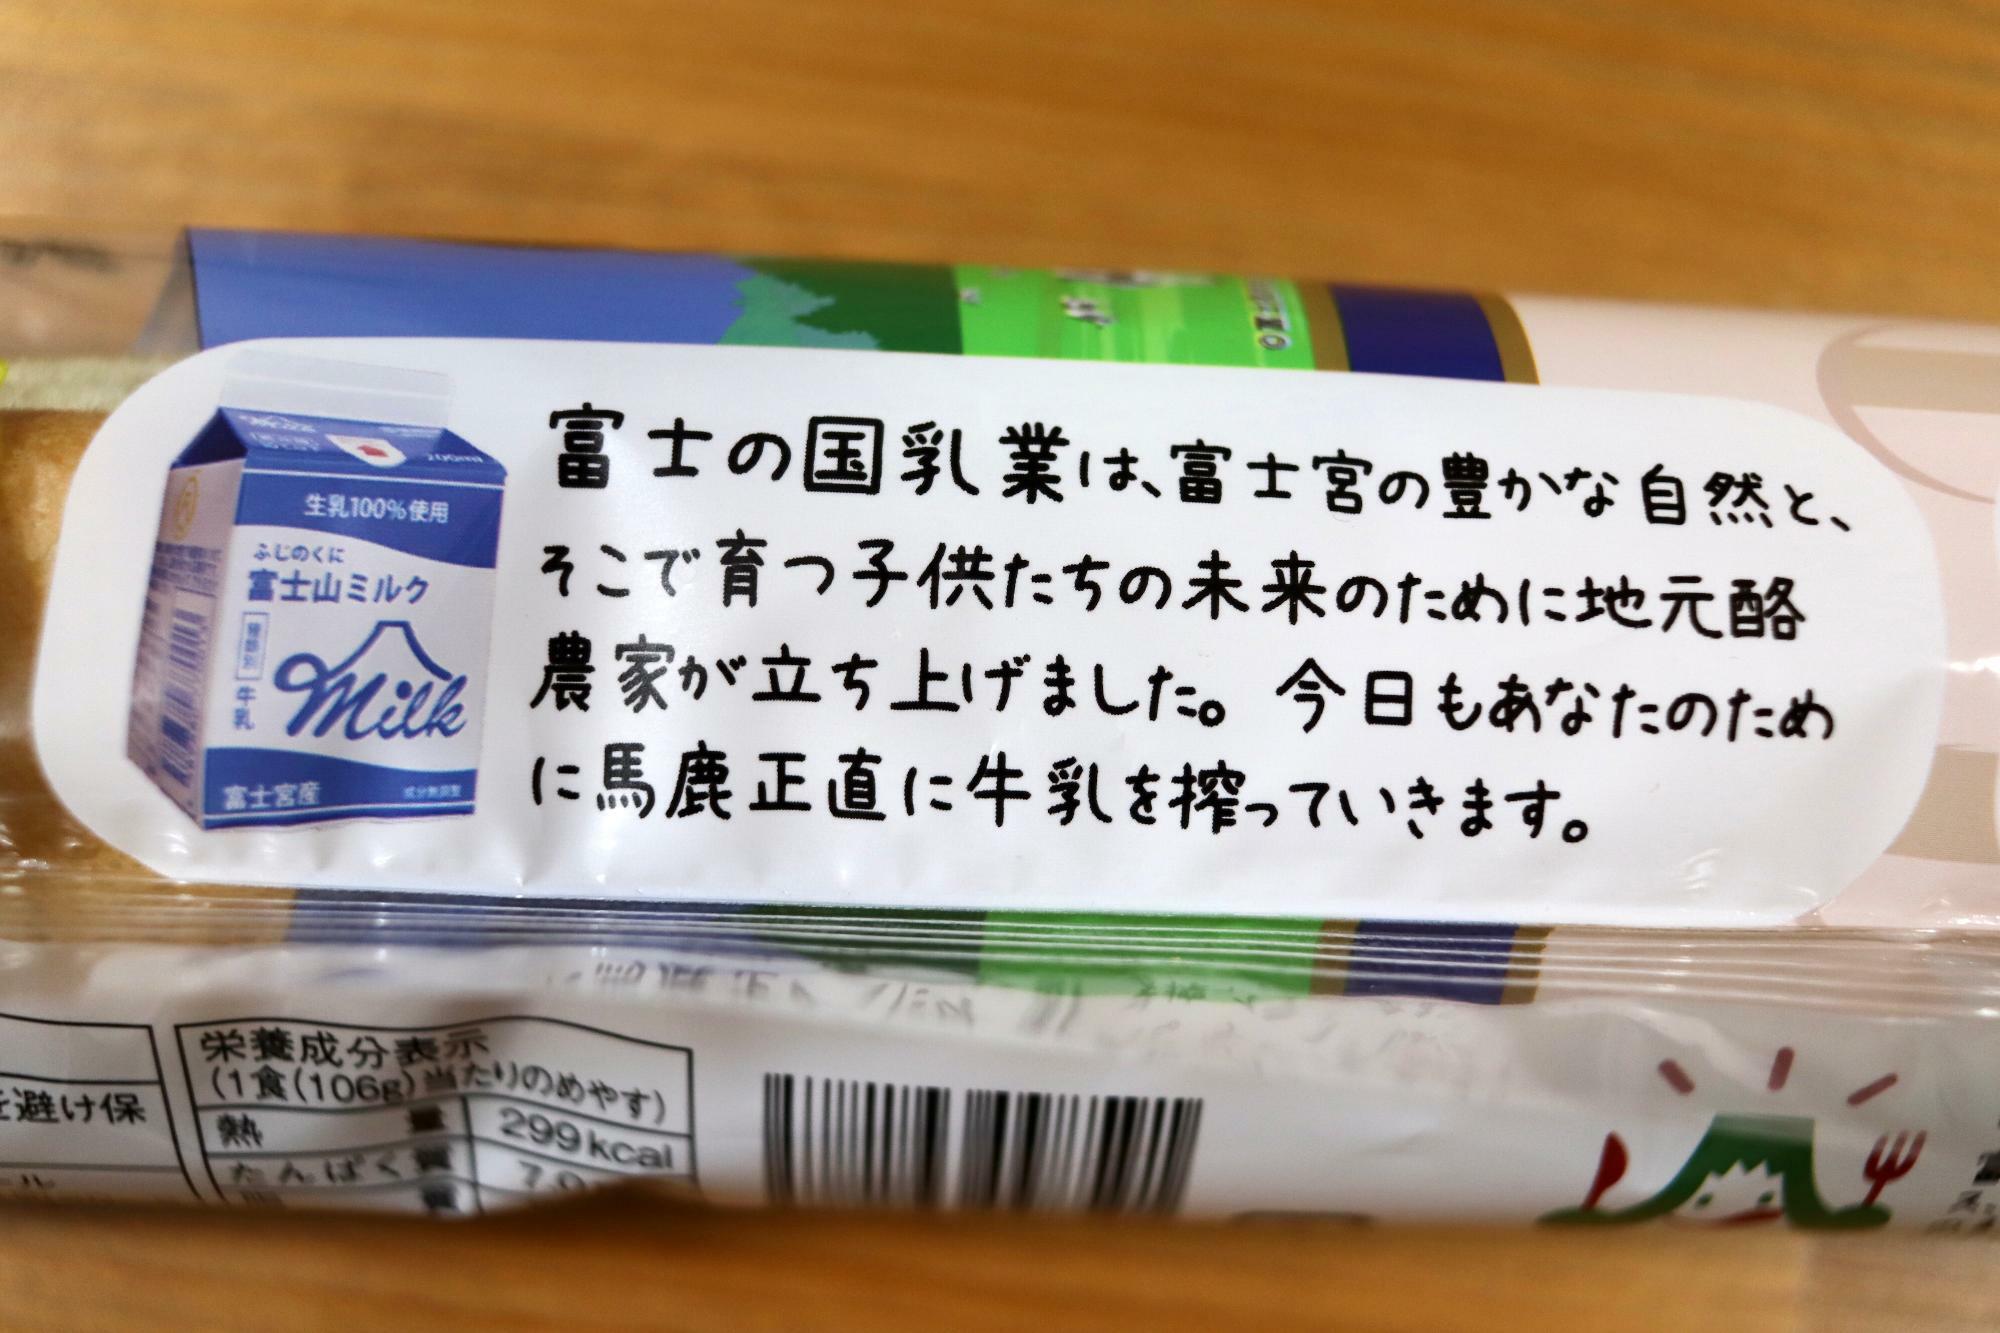 富士宮の「富士の国乳業」さんのミルクが使われています